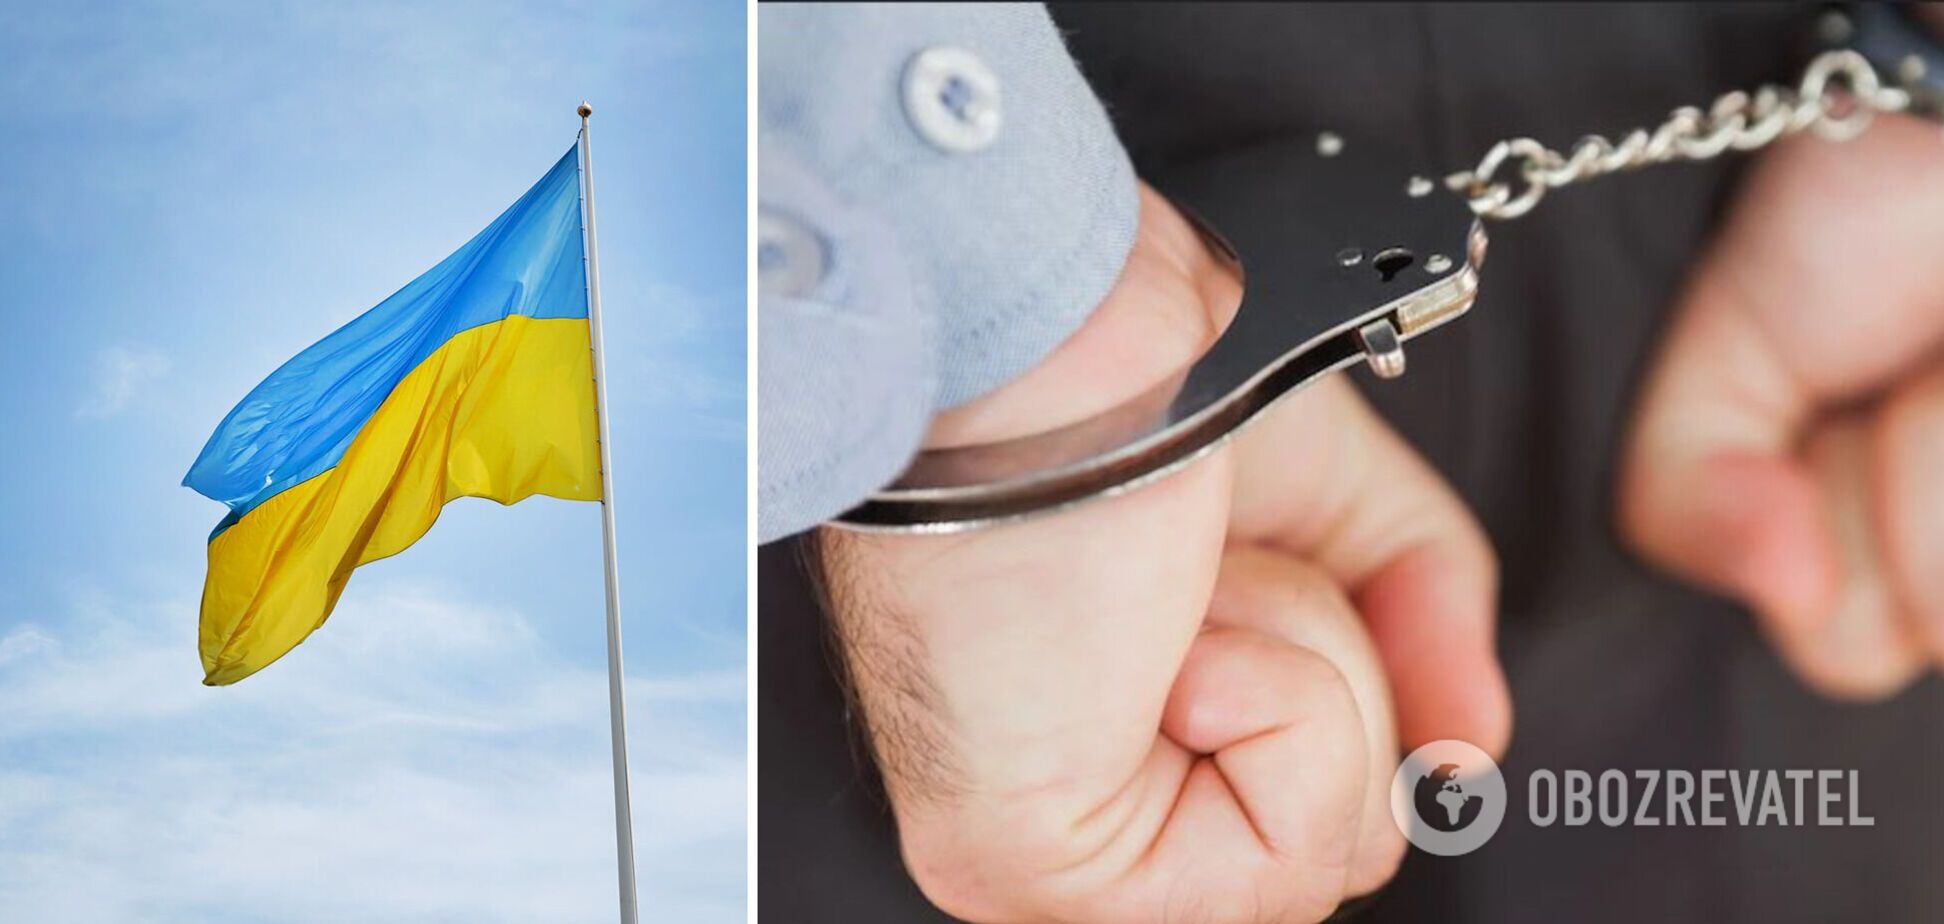 В Одессе мужчина сорвал флаг Украины и выбросил его на помойку: заявил, что поддерживает РФ